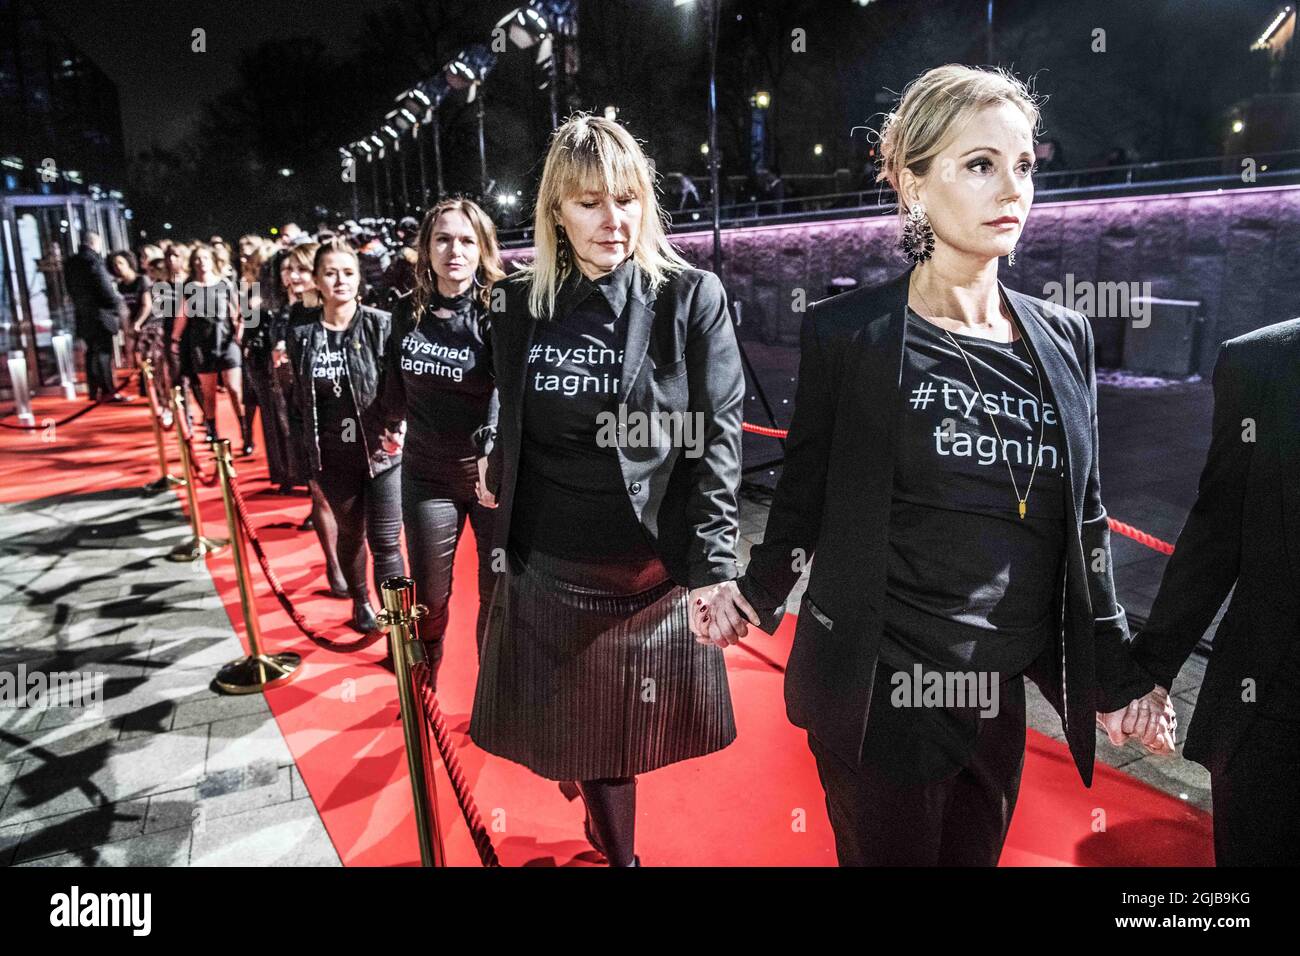 Sofia Helin und die Schauspielerinnen des Theaters rufen #tystnadtagning Hand in Hand bei den Guldbagge Awards Stockfoto